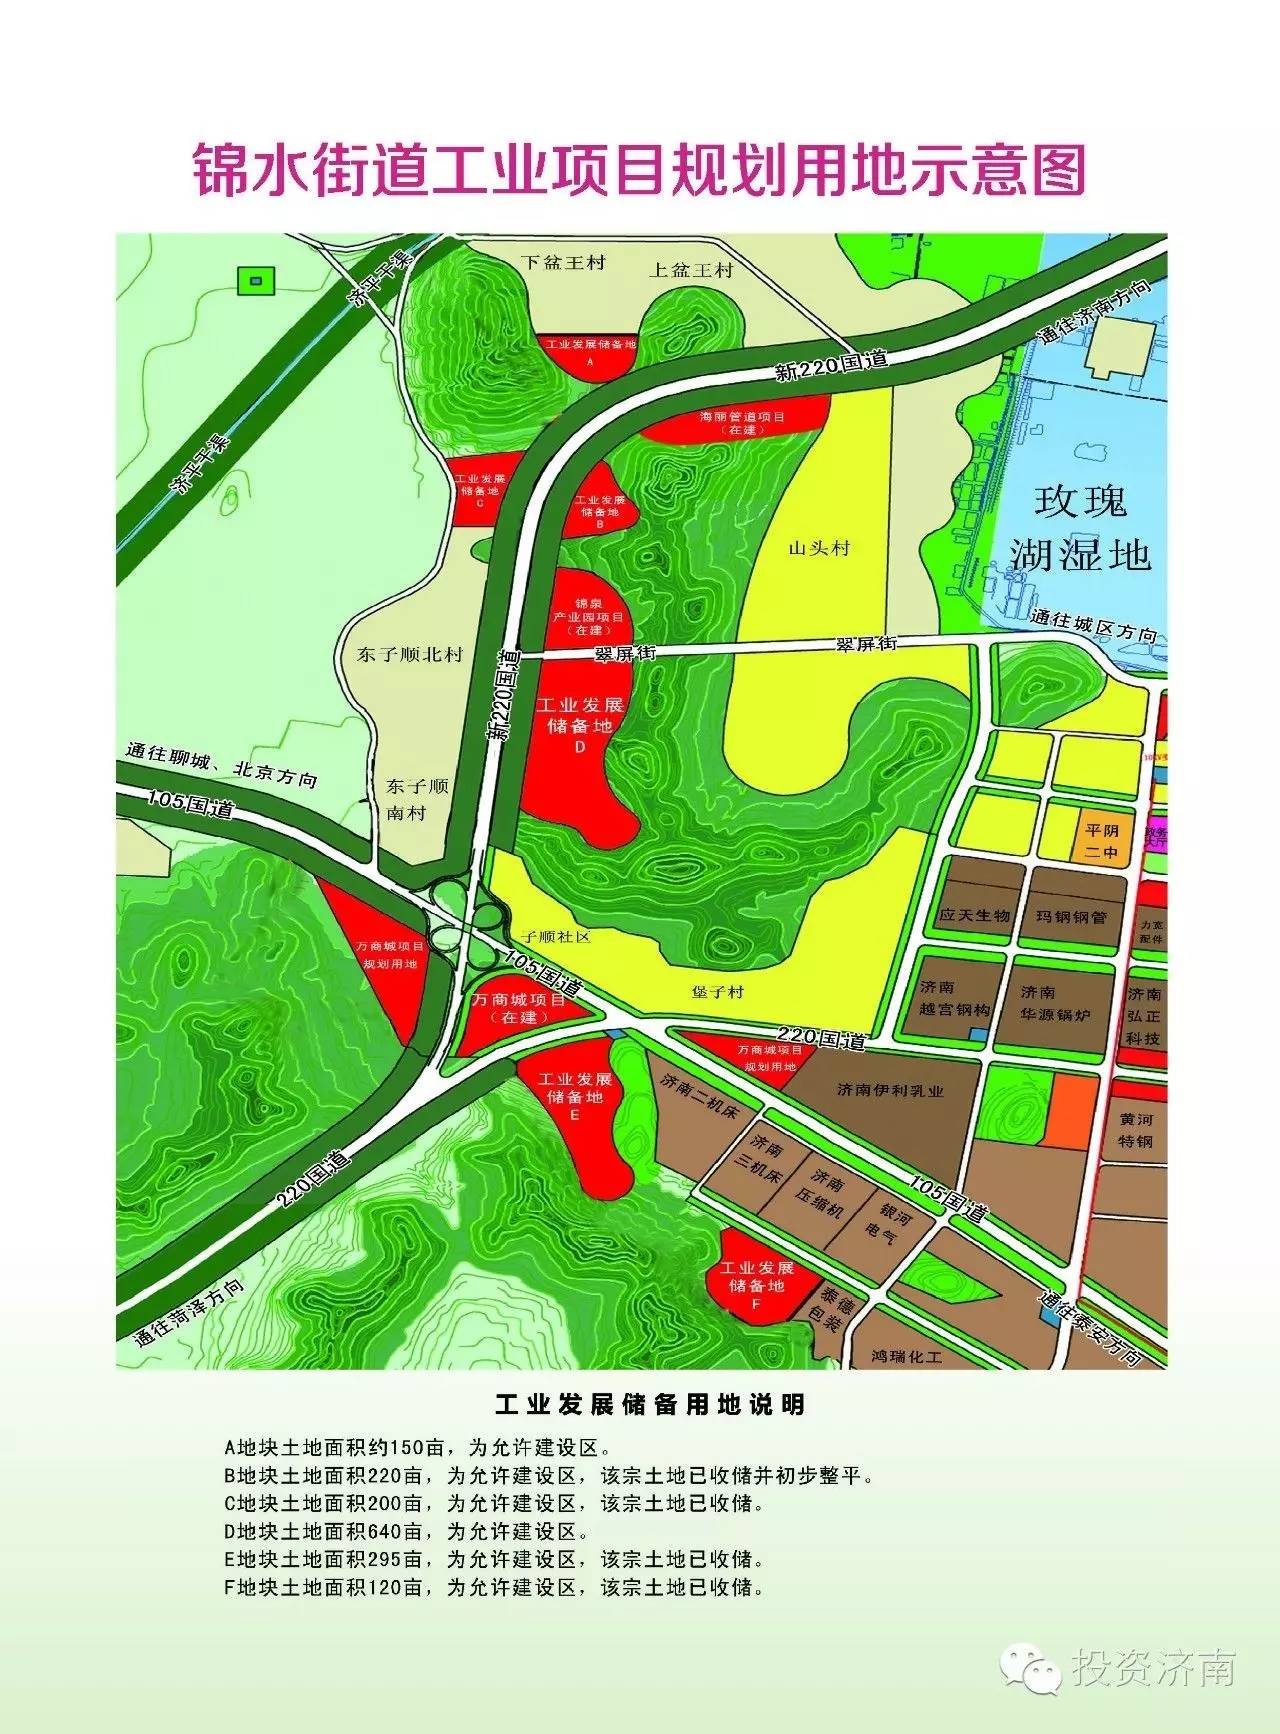 锦水街道位于平阴县城西部,辖区内共有22个行政村,人口31000多人